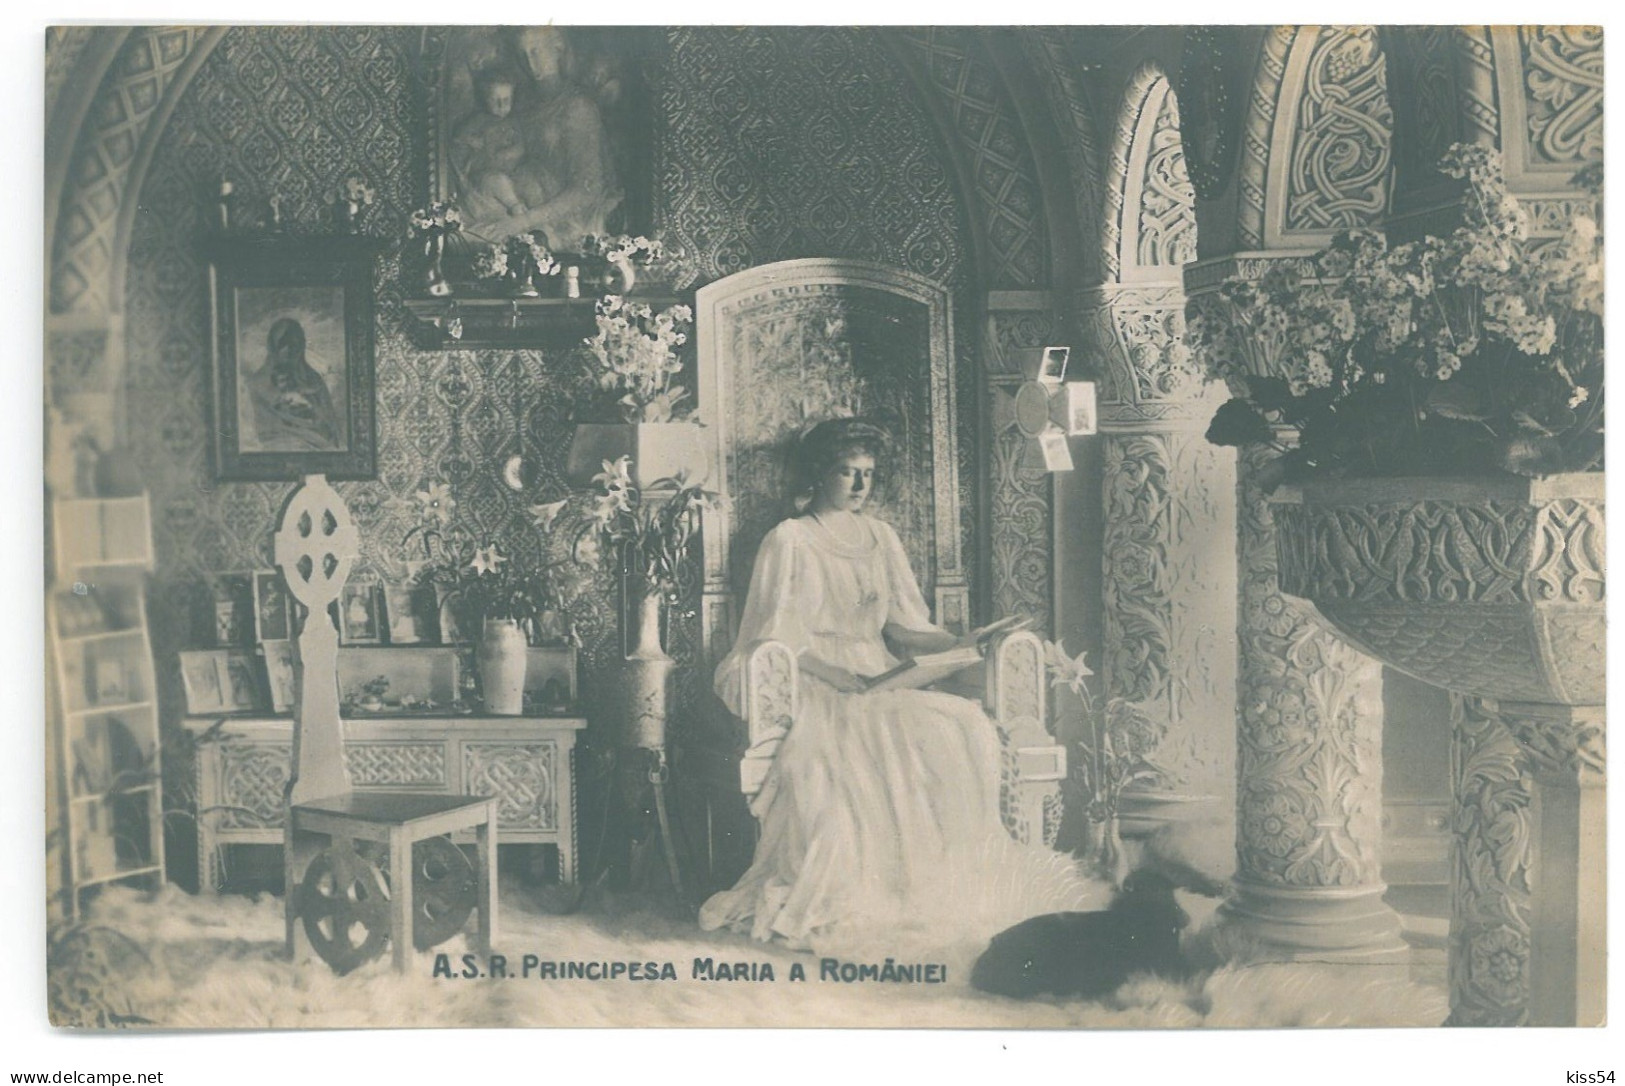 RO 40 - 25061 Queen MARY, Maria, Royalty, Regale, Romania - Old Postcard - Unused - Rumänien